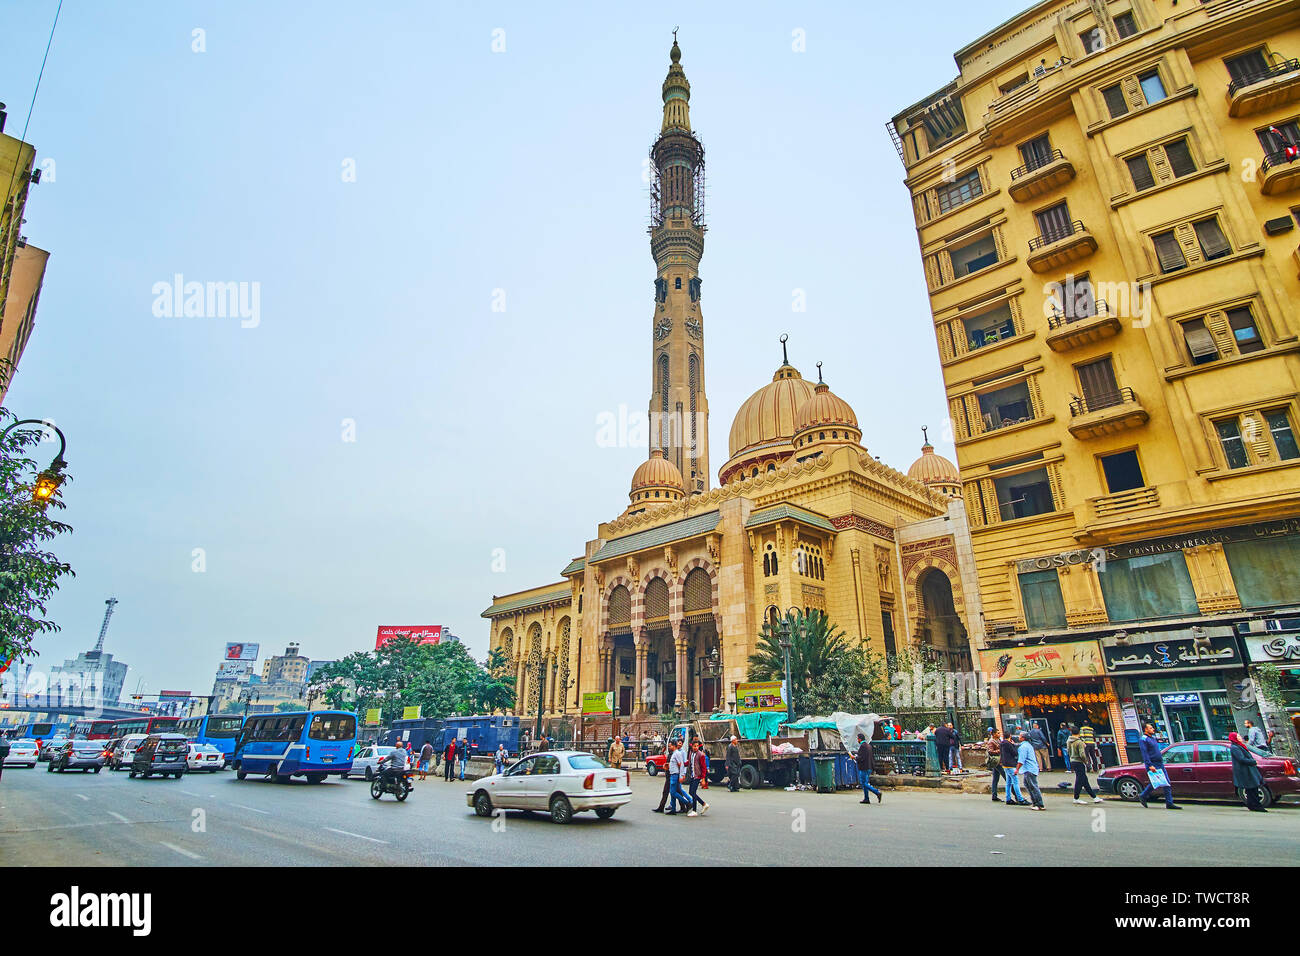 Il Cairo, Egitto - 22 dicembre 2017: l'edificio scenico di El Fath moschea con minareto alto, scolpiti dome, sottili pilastri e numerosi archi è visto essere Foto Stock